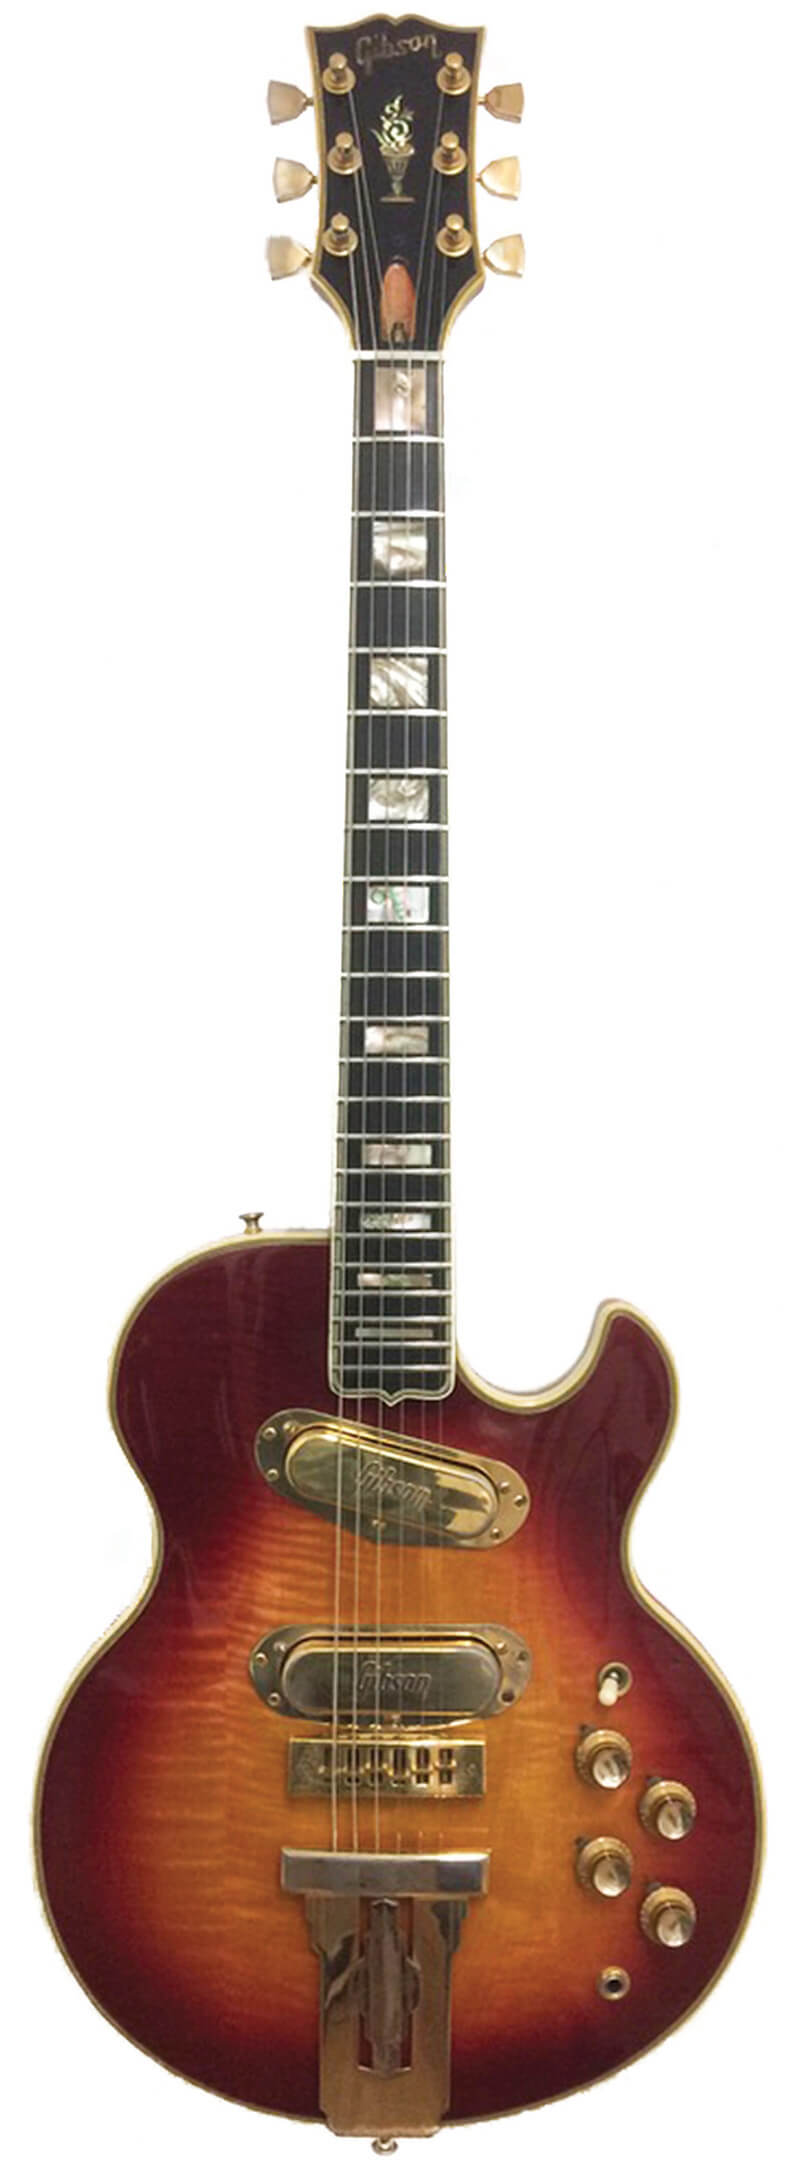 VINTAGE GUITAR FLASHBACK: 1973 Gibson L-5S